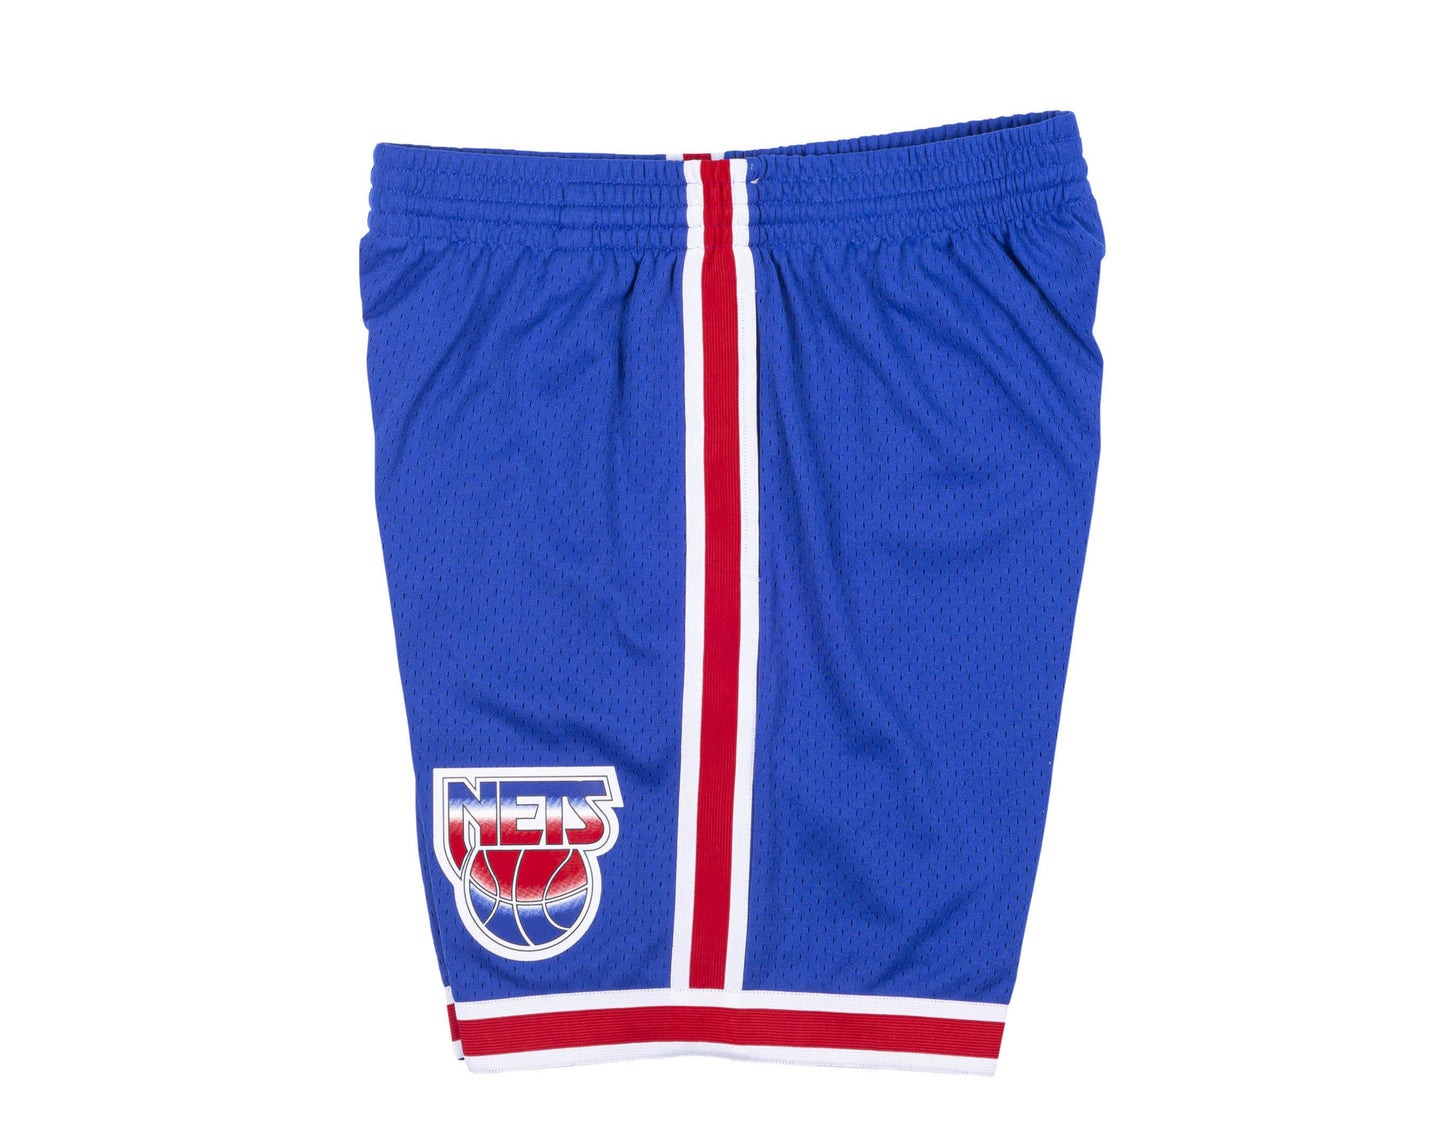 Mitchell & Ness Swingman New Jersey Nets Road 1993-94 Shorts